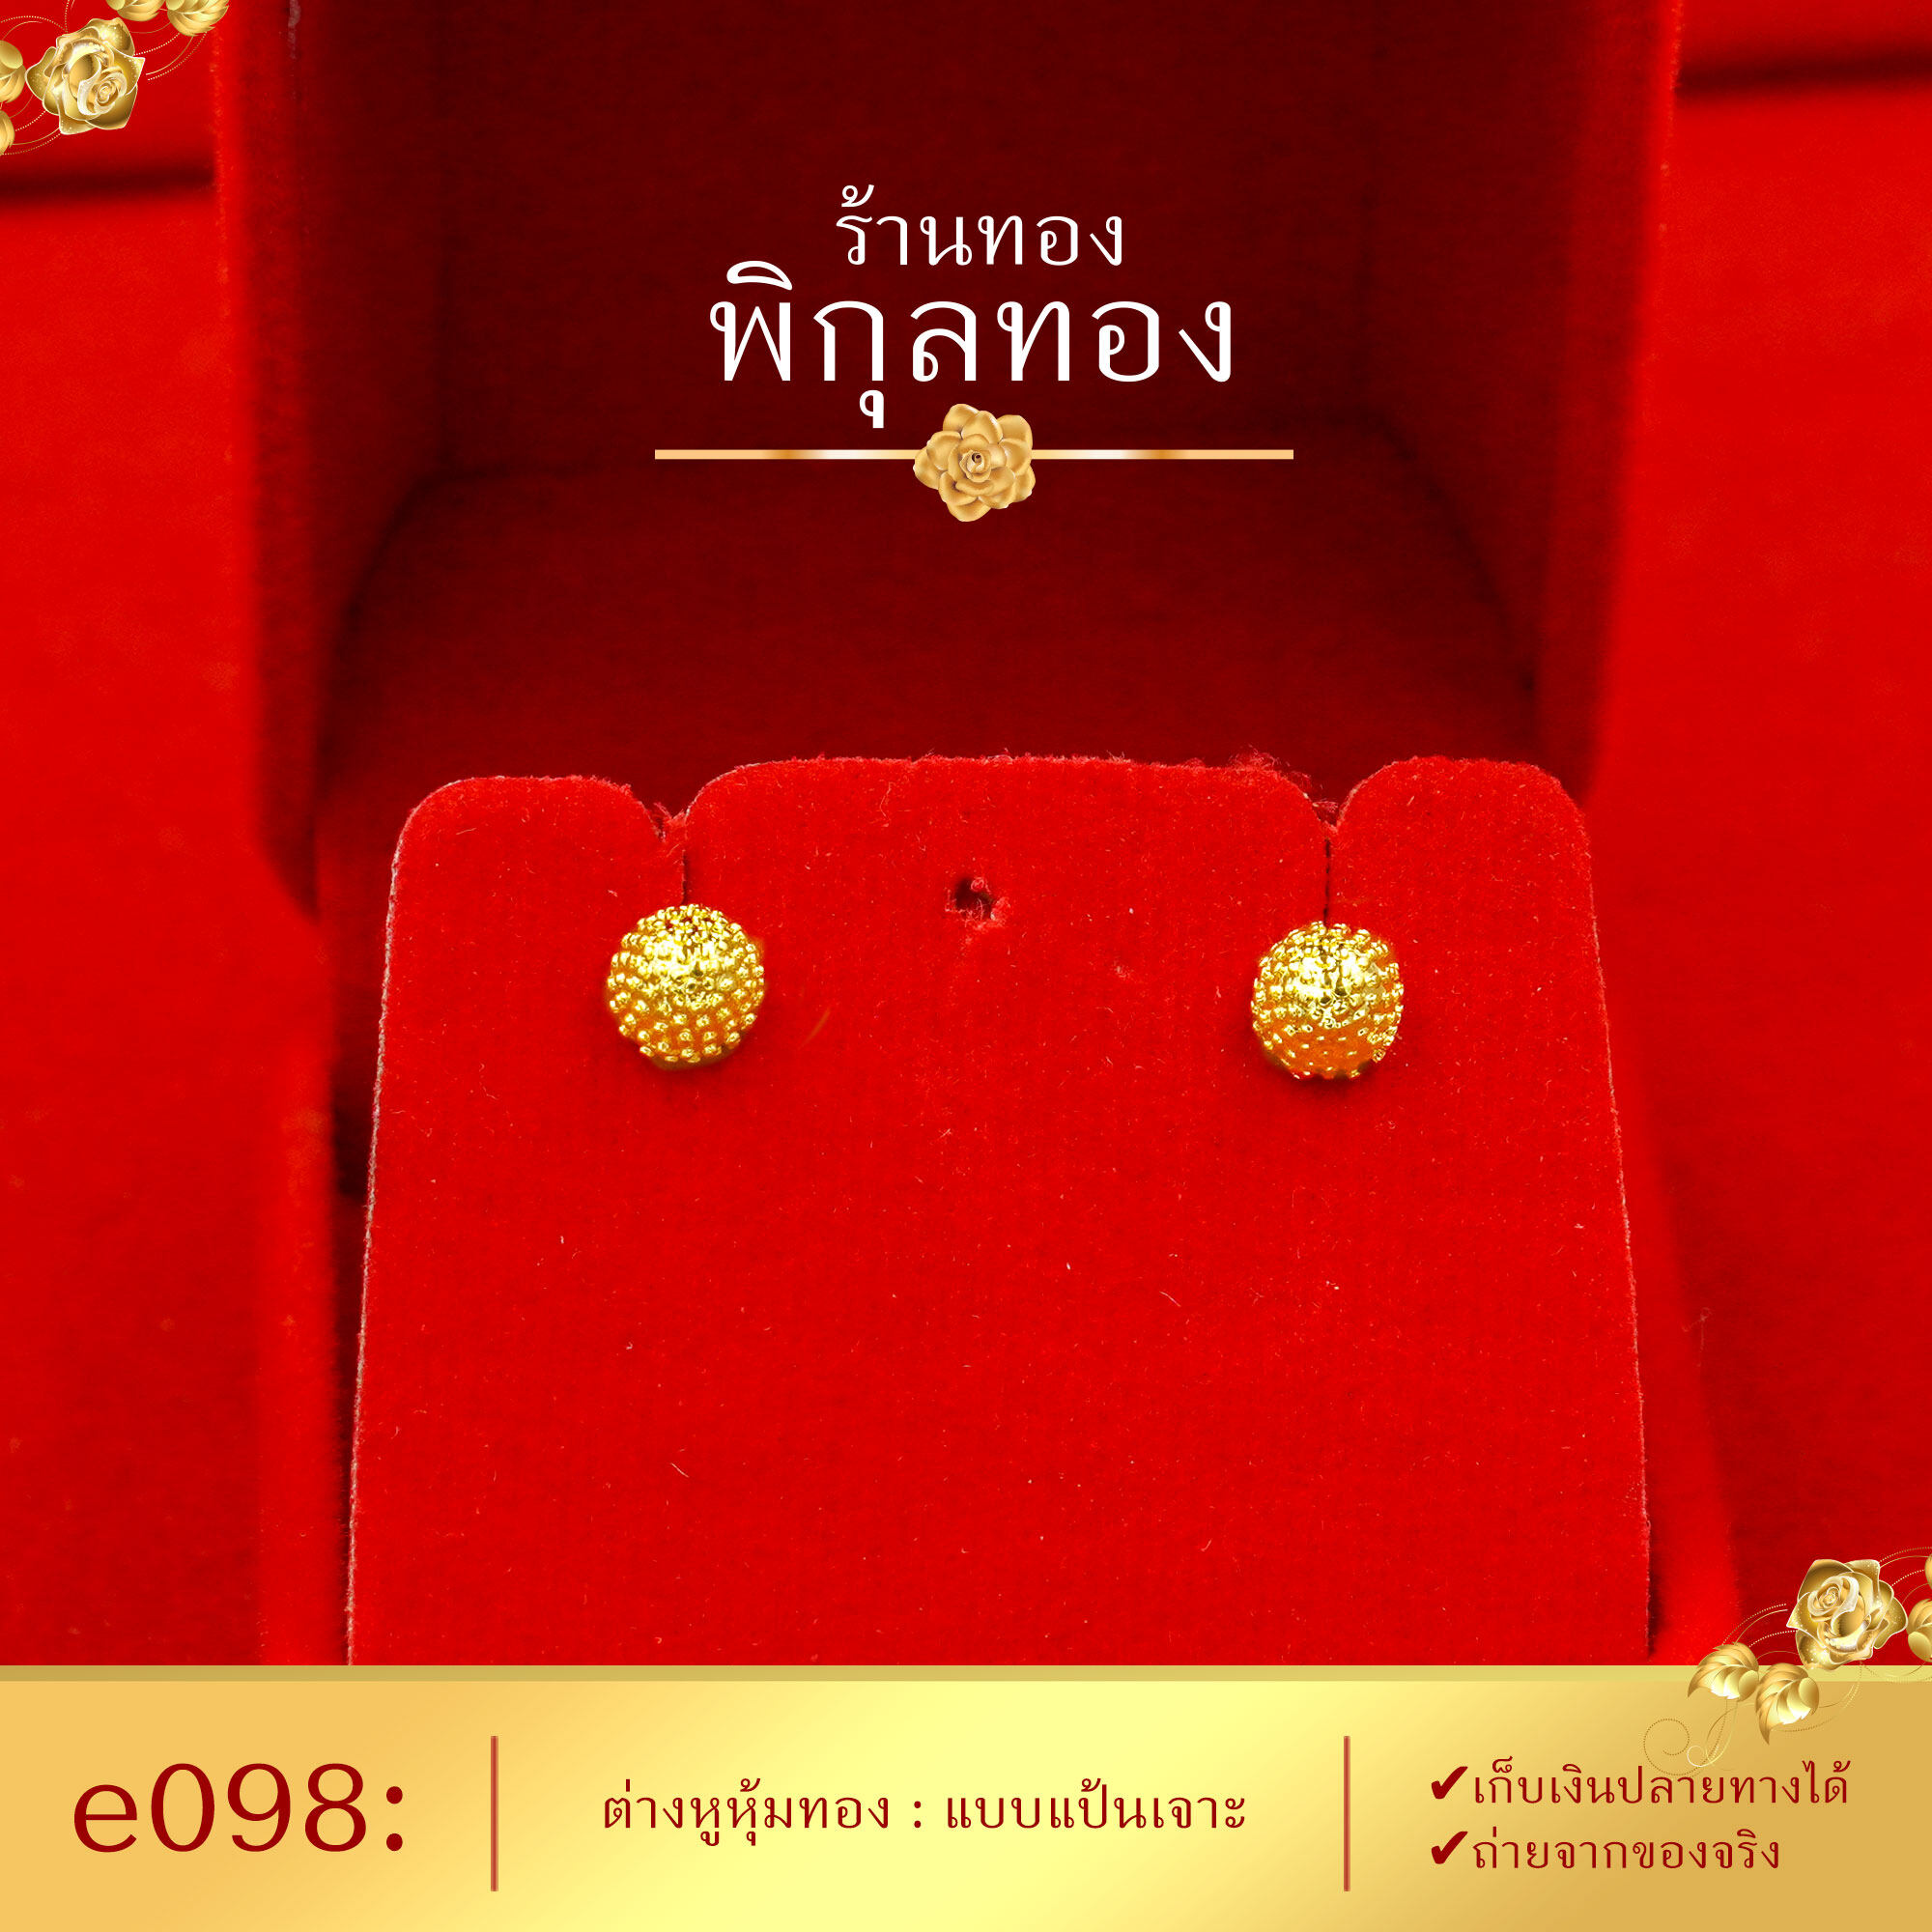 Pikunthong e098 ต่างหู ต่างหูทอง ต่างหูหุ้มทองแท้ ตุ้มหูทอง (ต่างหูทองหุ้ม เกรดพิเศษ) ร้าน พิกุลทอง